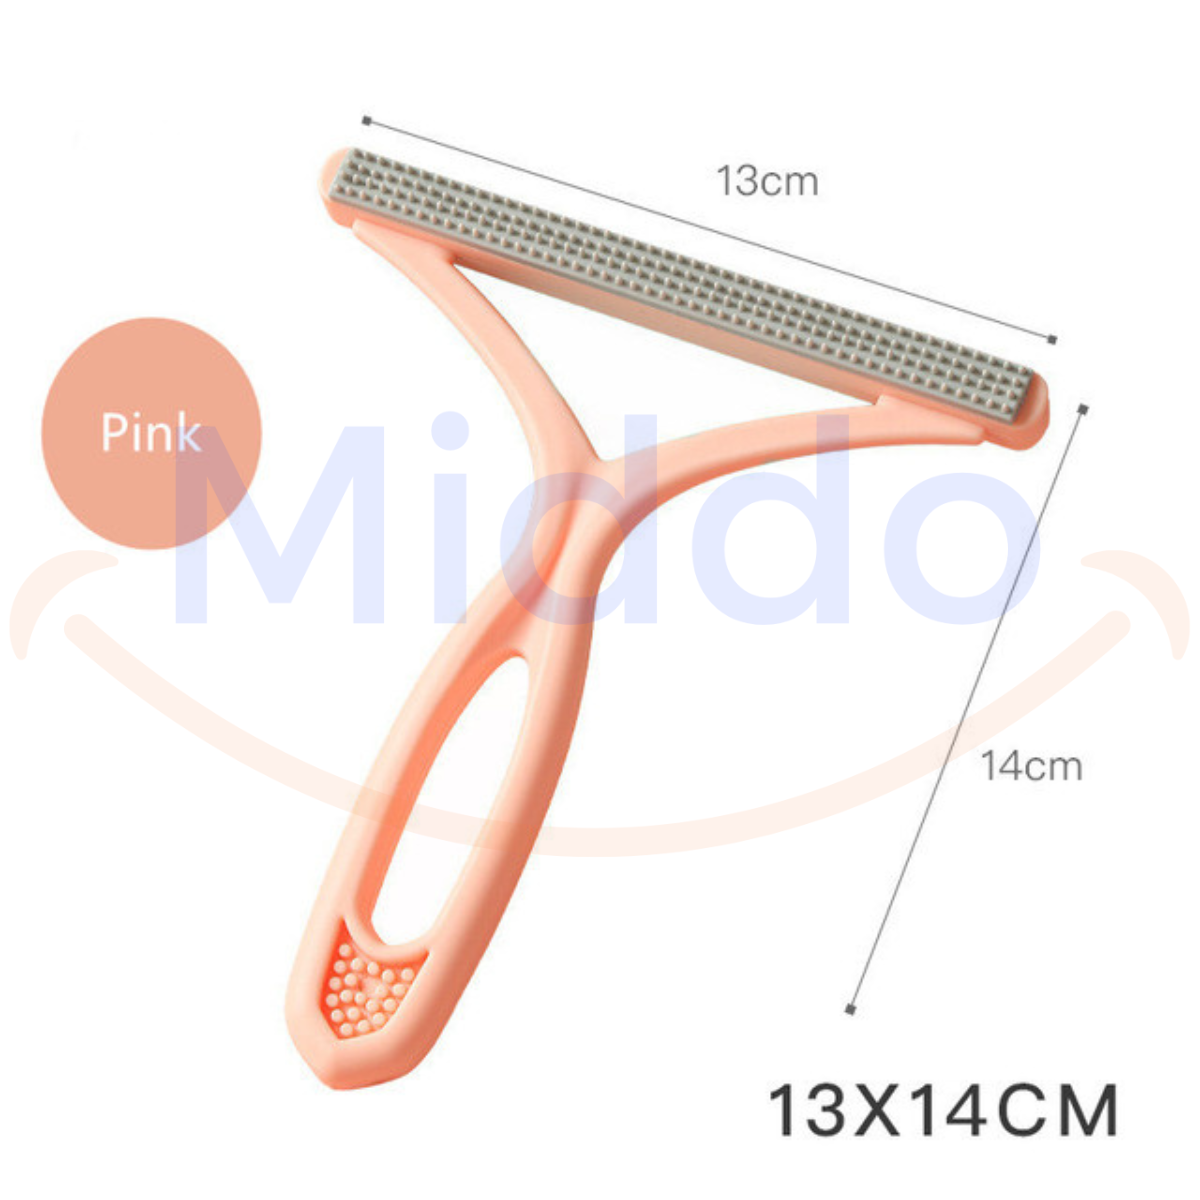 HairAway haarverwijderaar in roze met afmetingen